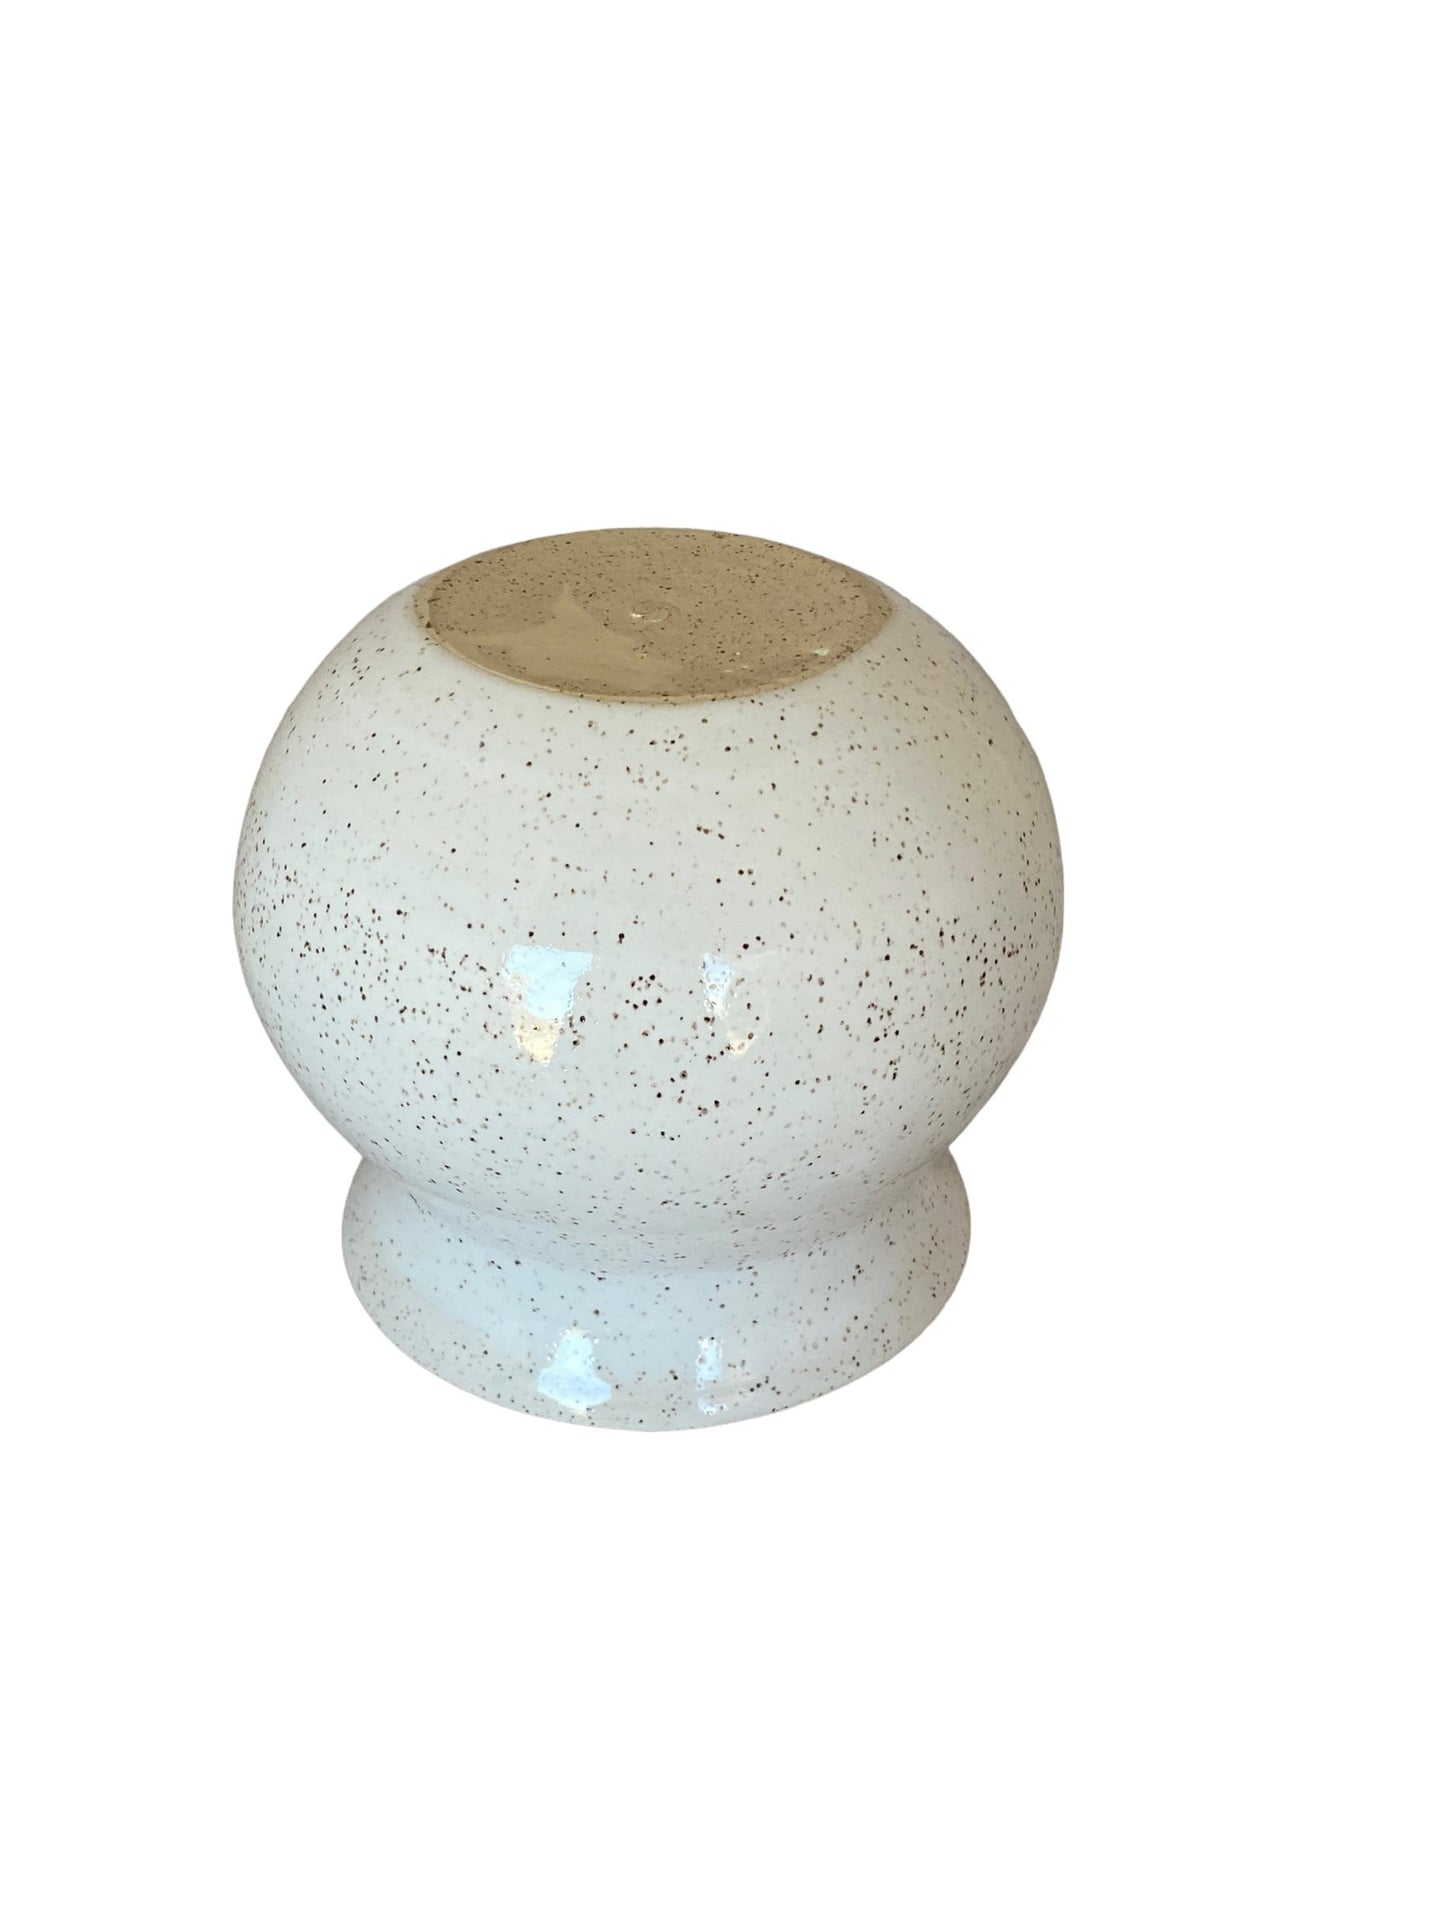 Speckled White Flower Vase - Pottery Flower Vase - Contemporary Ceramic Pottery Vase - Modern Vases